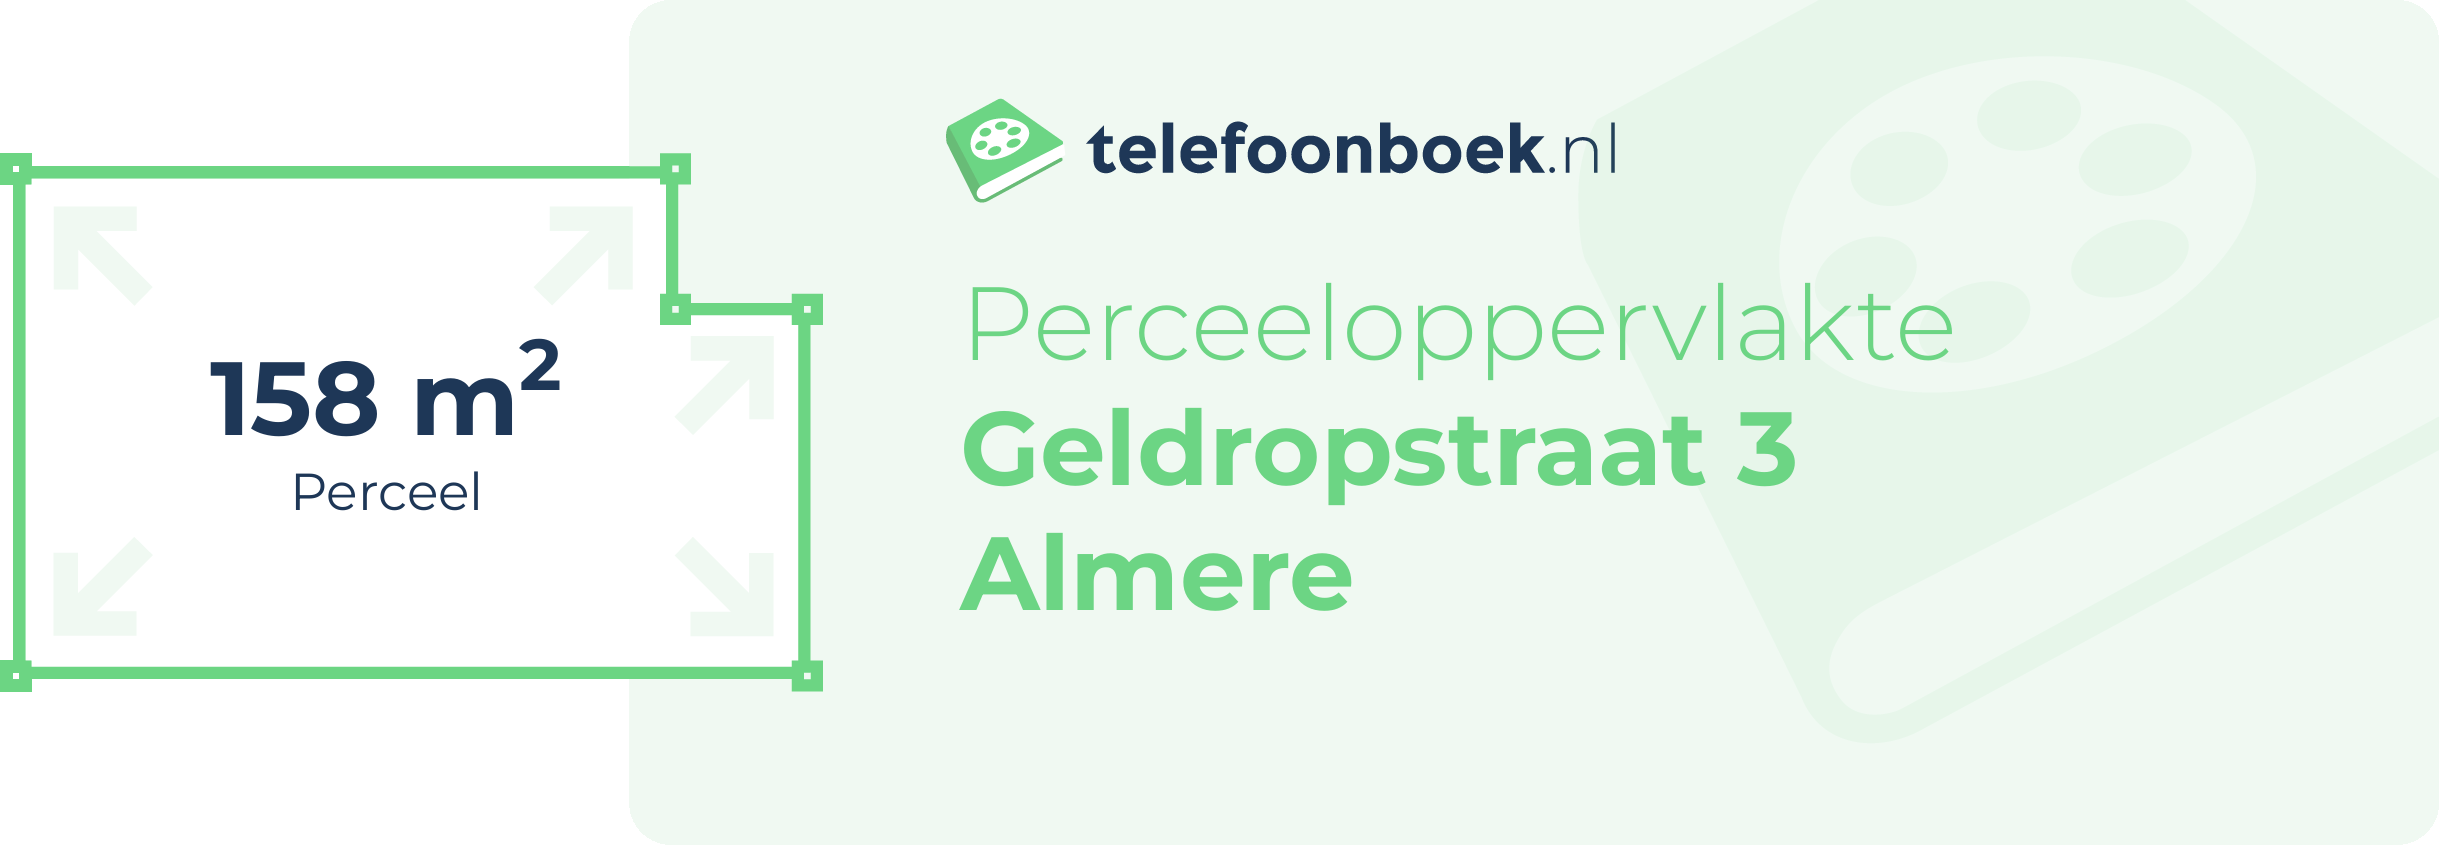 Perceeloppervlakte Geldropstraat 3 Almere